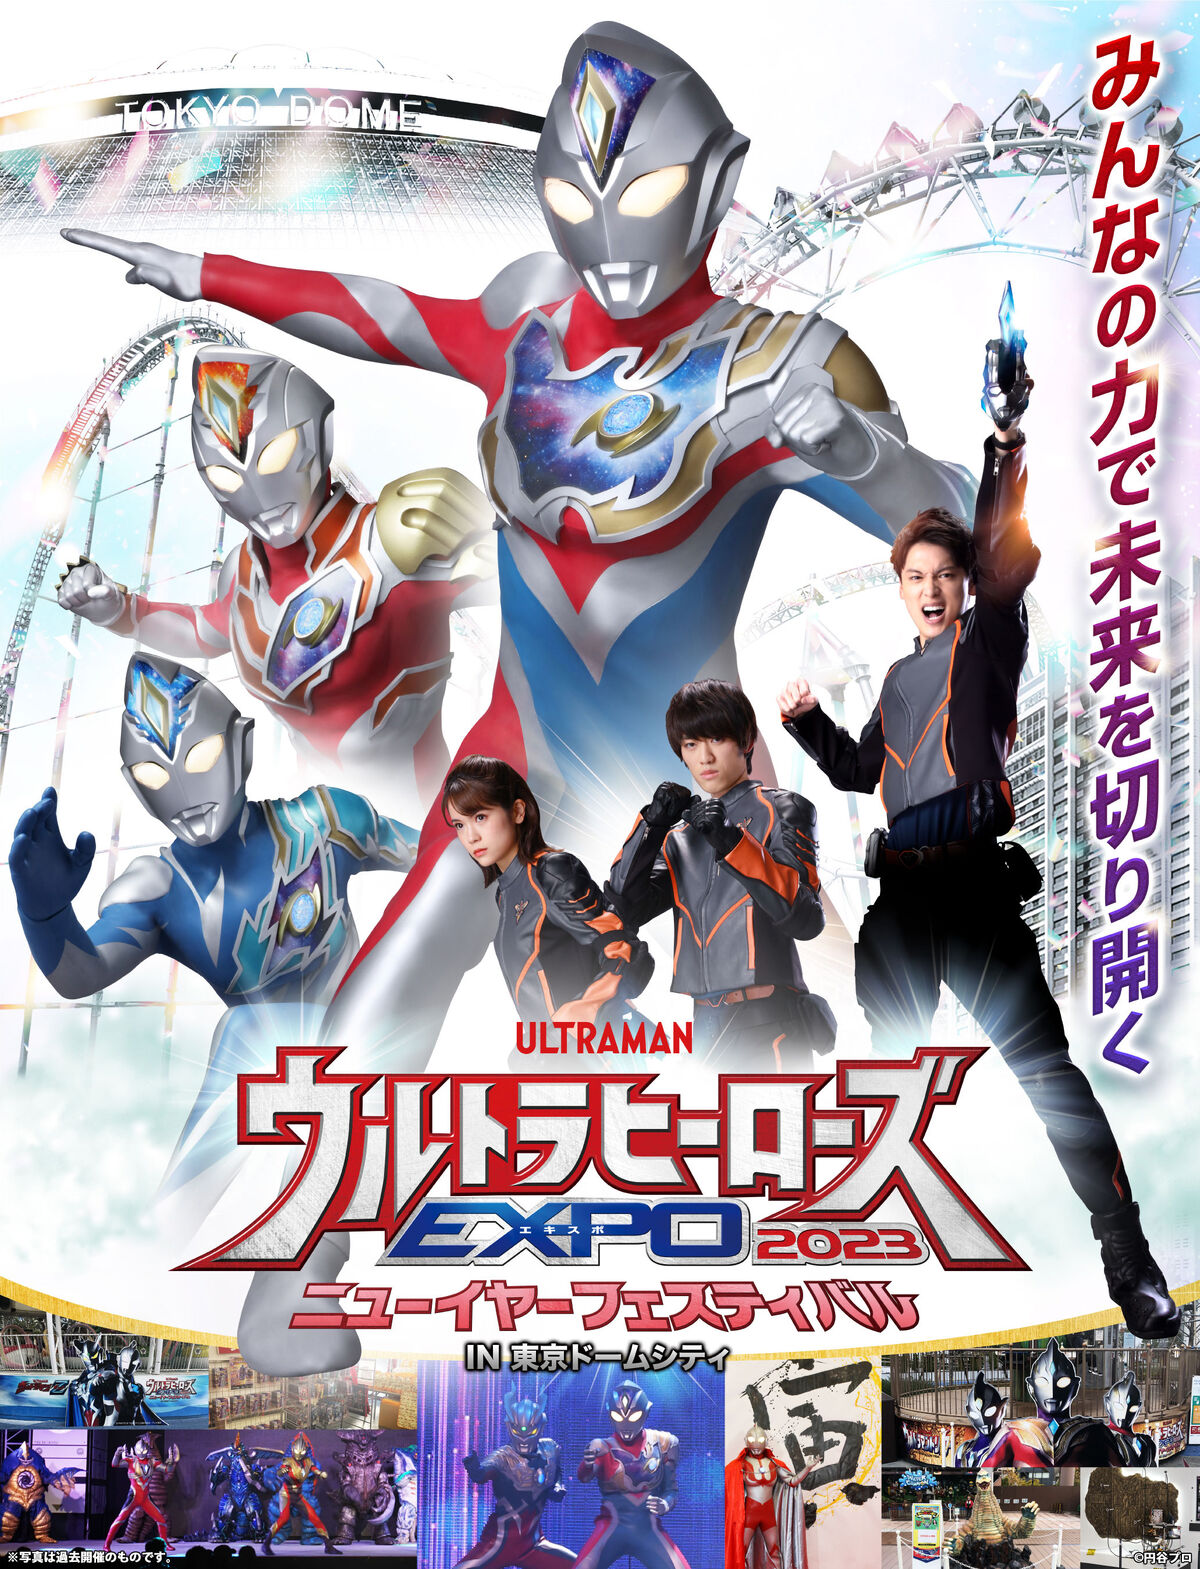 Ultra Heroes EXPO 2023 New Year Festival | Ultraman Wiki | Fandom